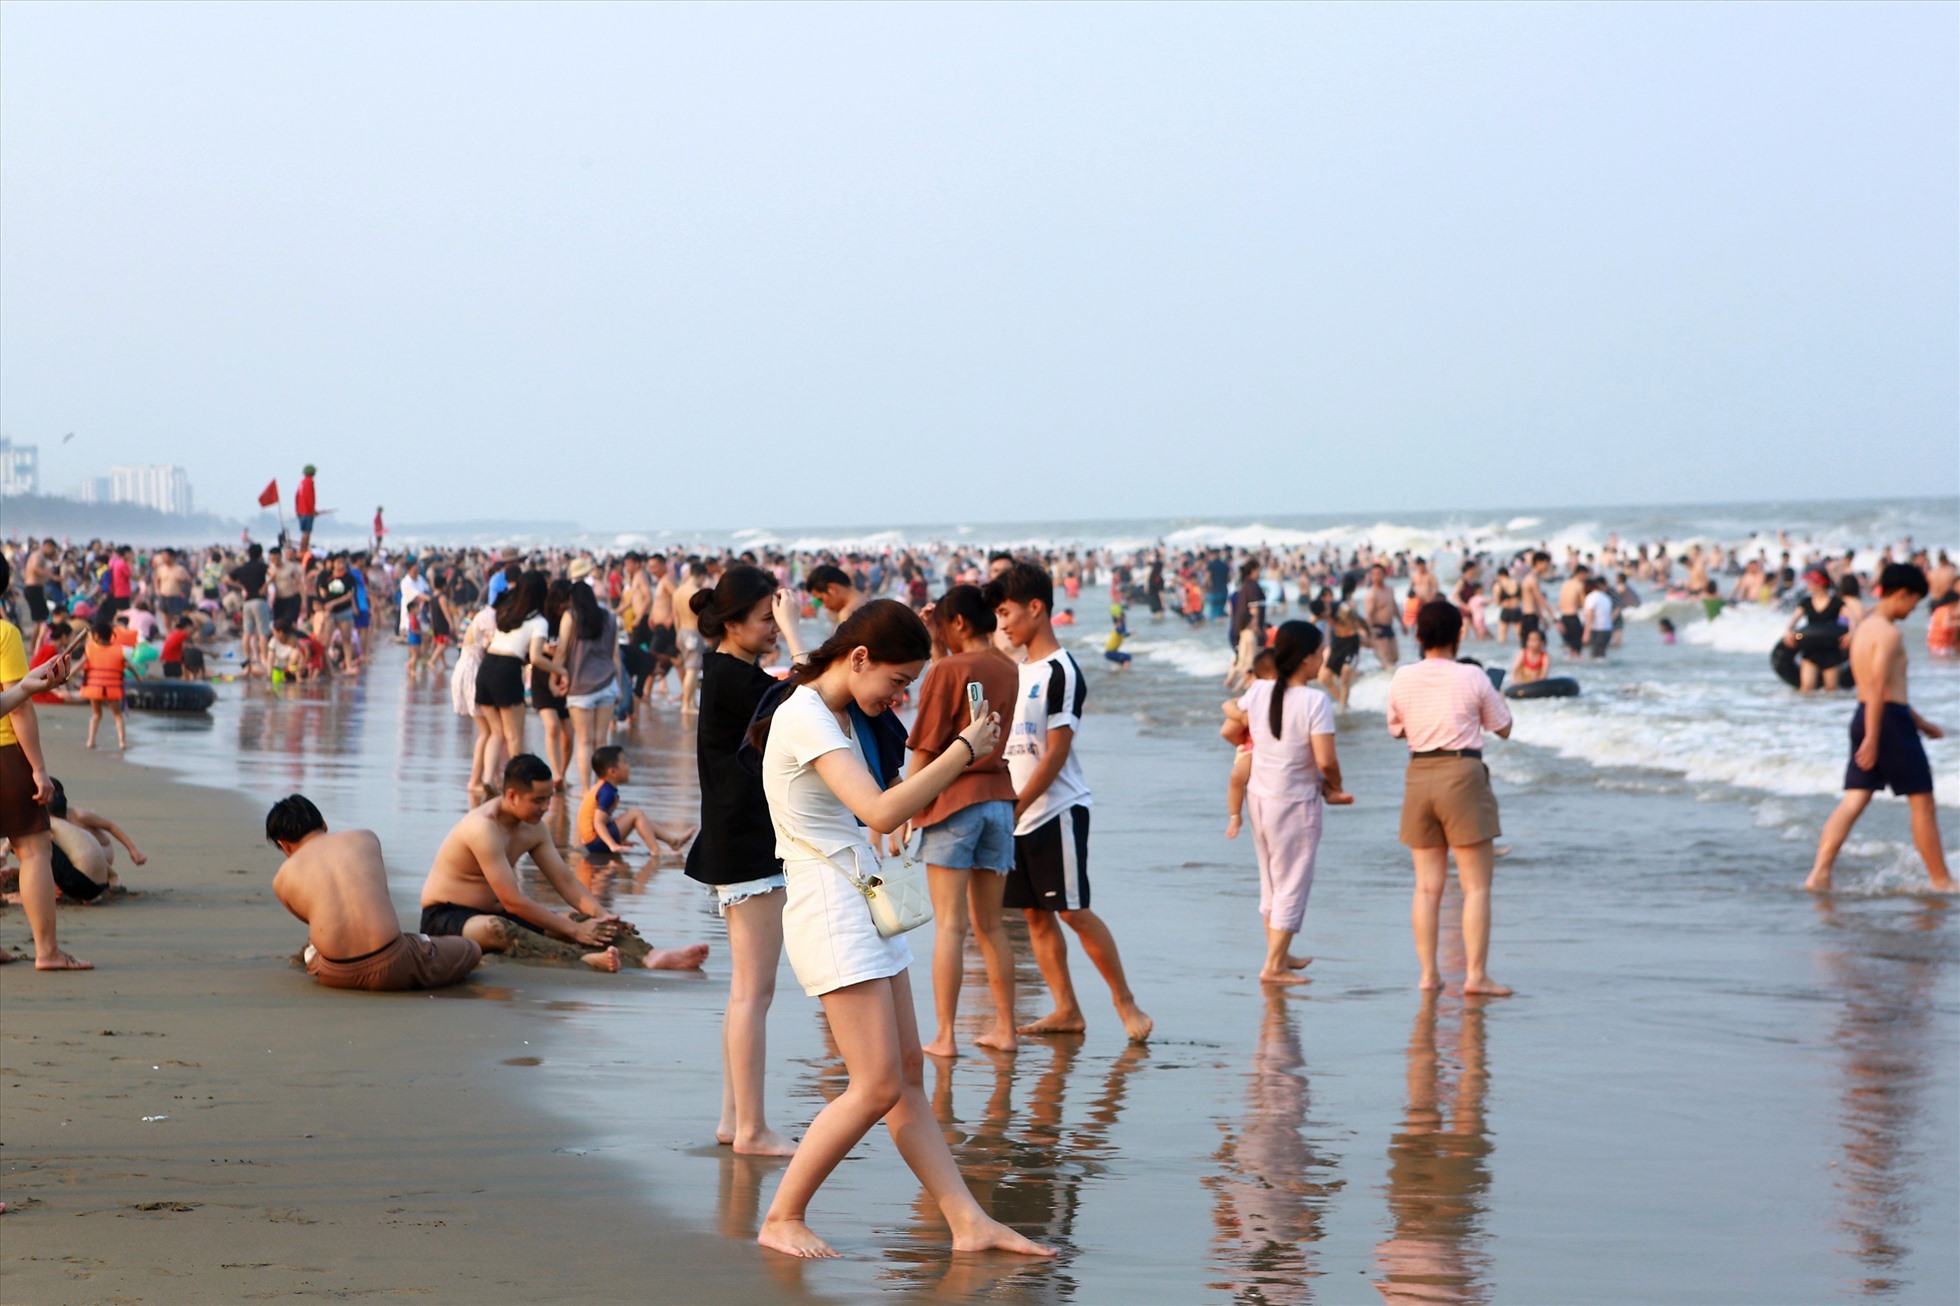 Cũng theo nhiều người dân, việc mới đầu hè mà bãi biển ken đặc người là do thời tiết nắng nóng, du khách chủ yếu trong tỉnh (ở các huyện, thị lân cận) đã tìm về đây để “giải nhiệt”. Ảnh: Quách Du